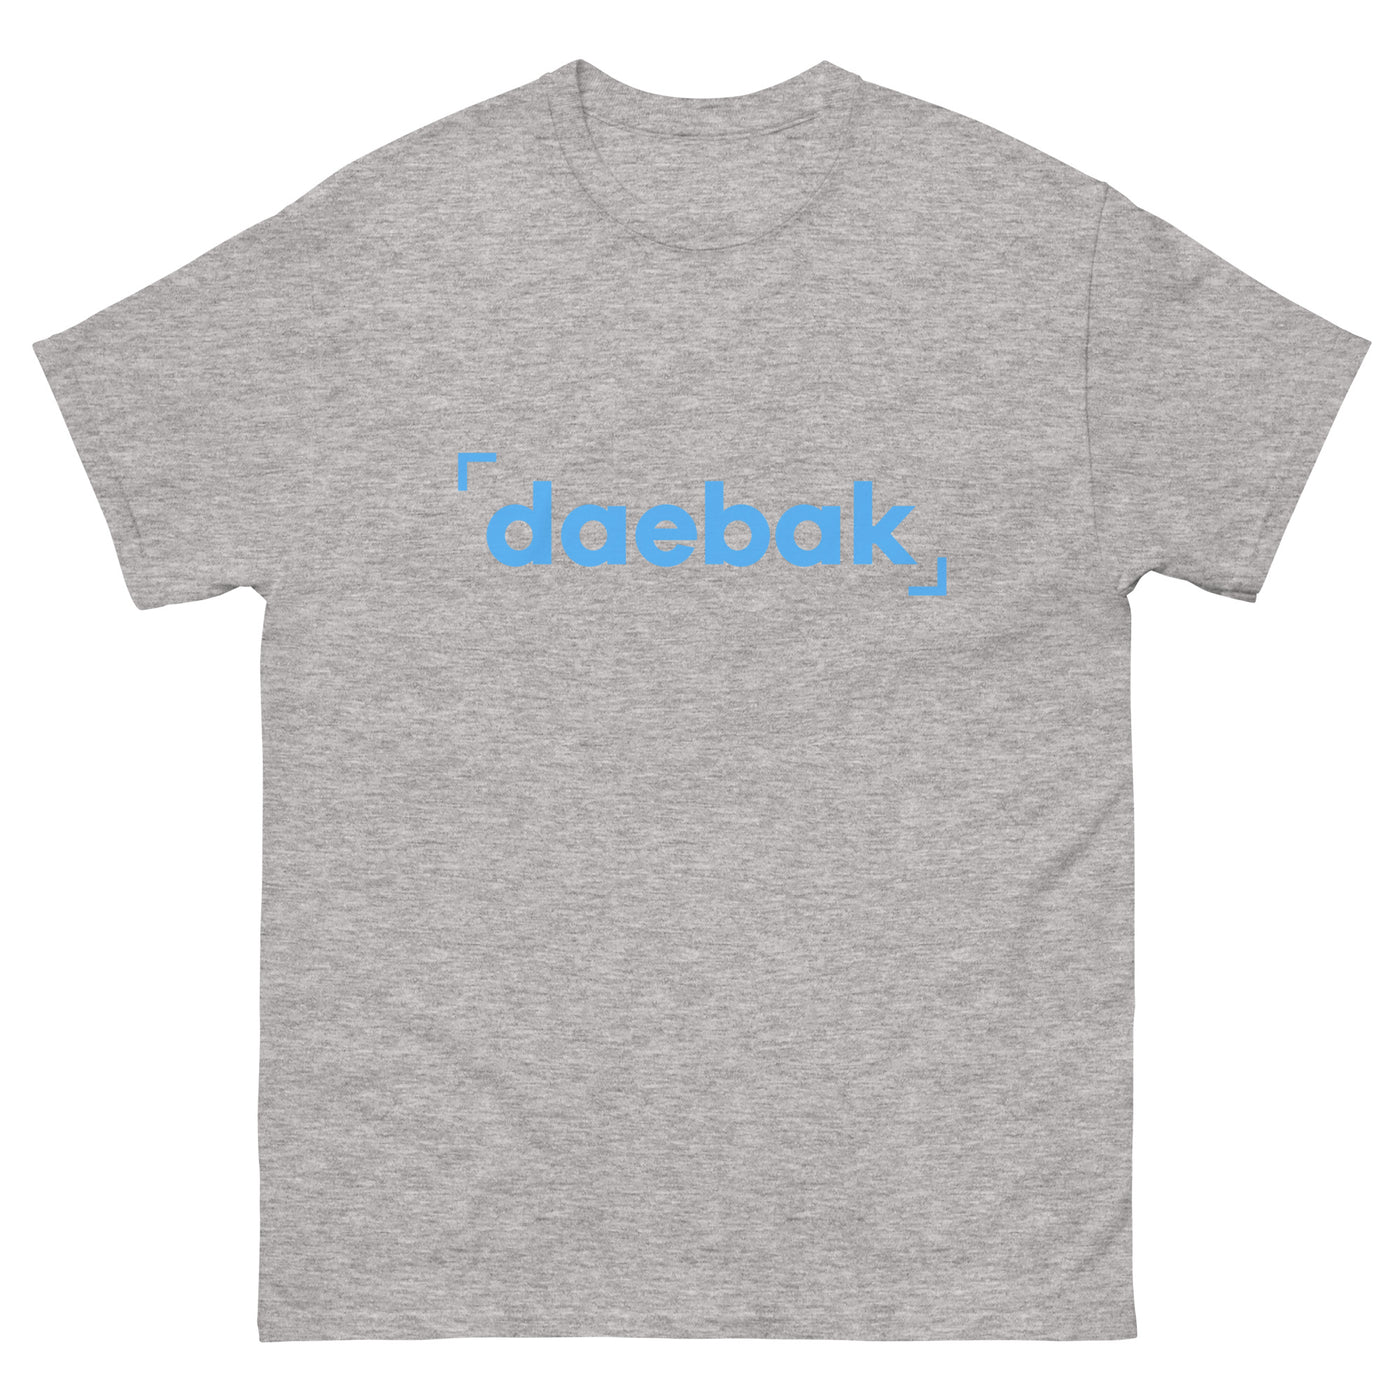 Daebak Basic Tee (Men) - Blue Logo